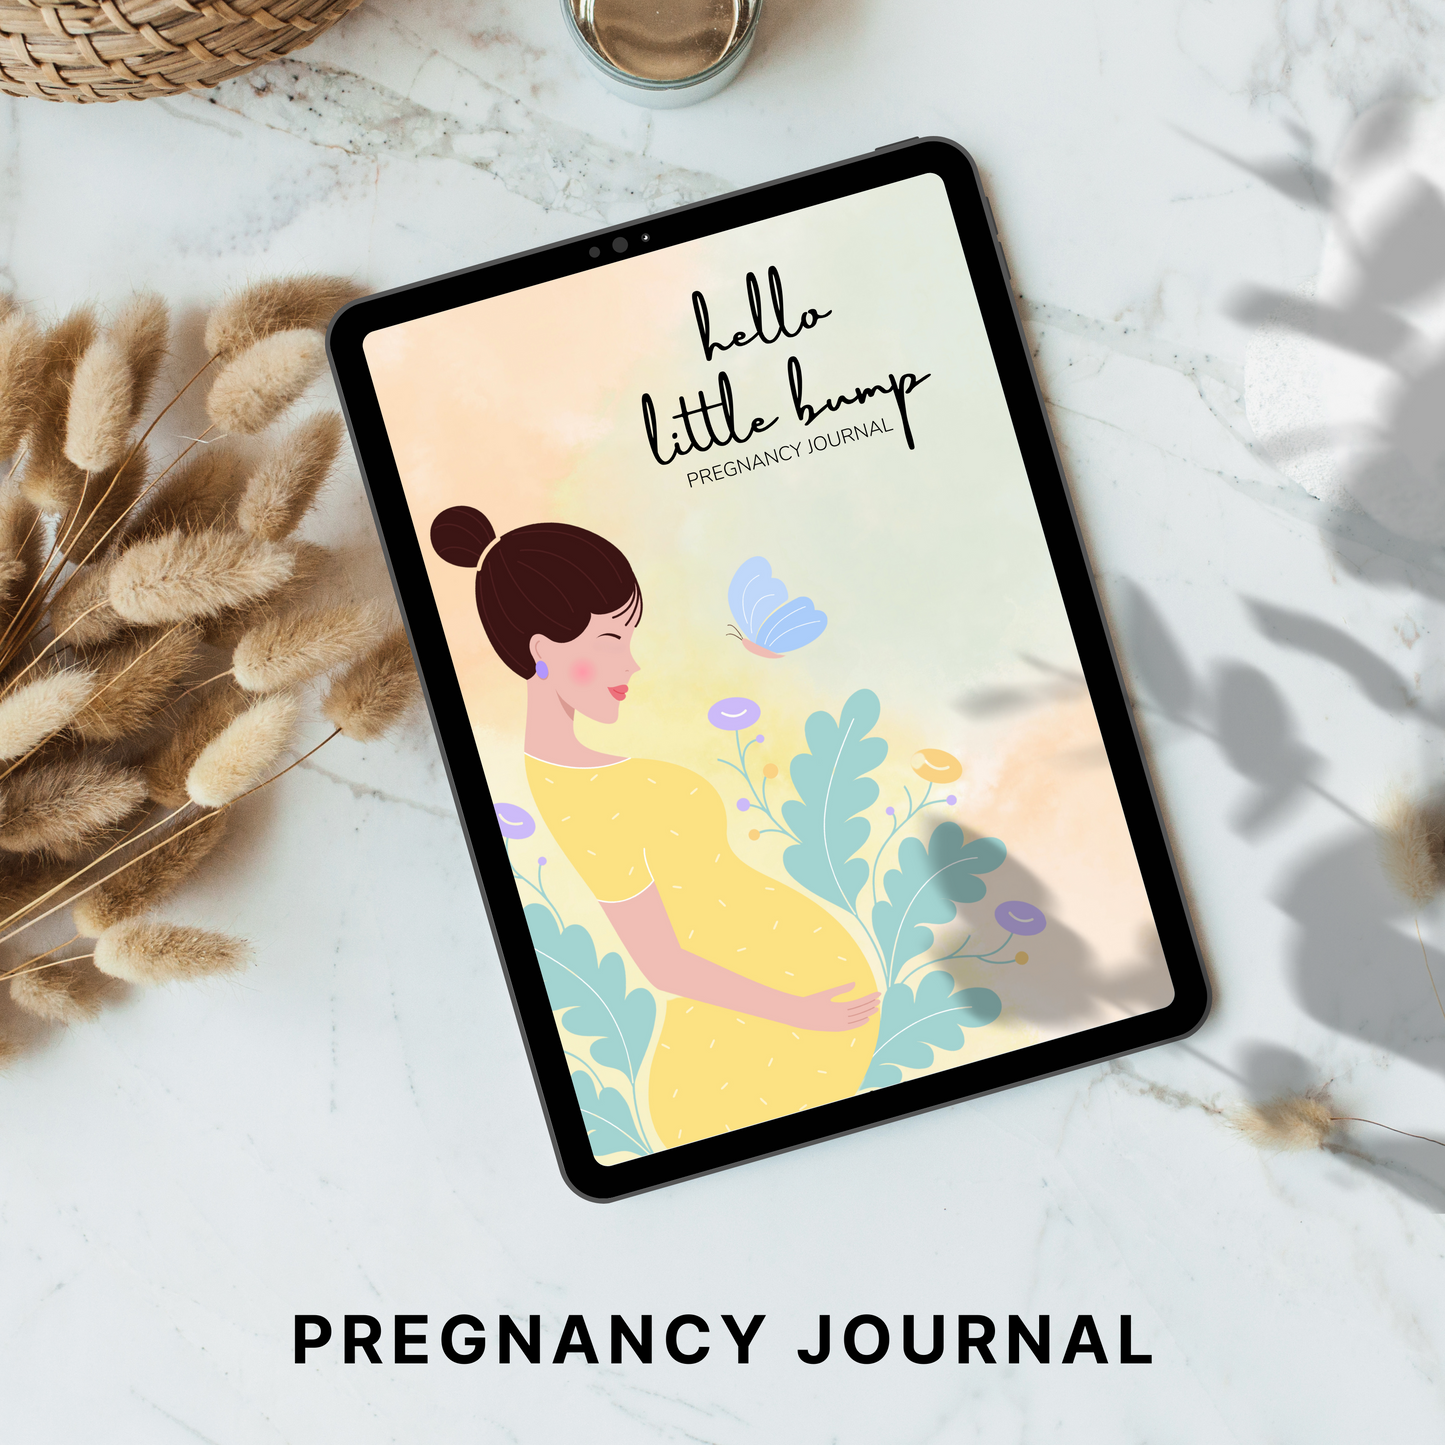 Pregnancy Journal PLR/MRR